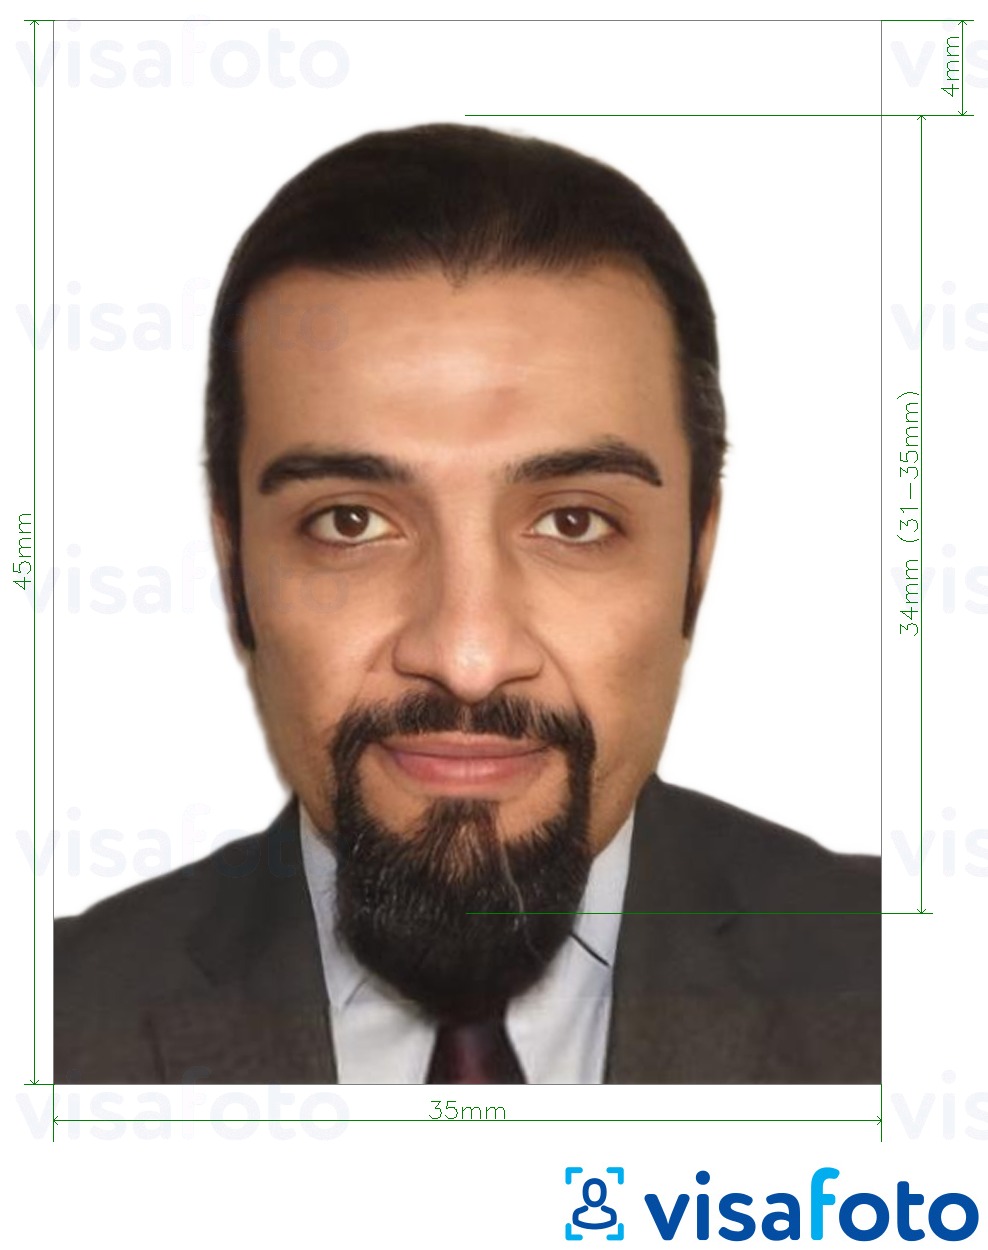 阿联酋在线身份证35x45毫米 的标准尺寸照片示例